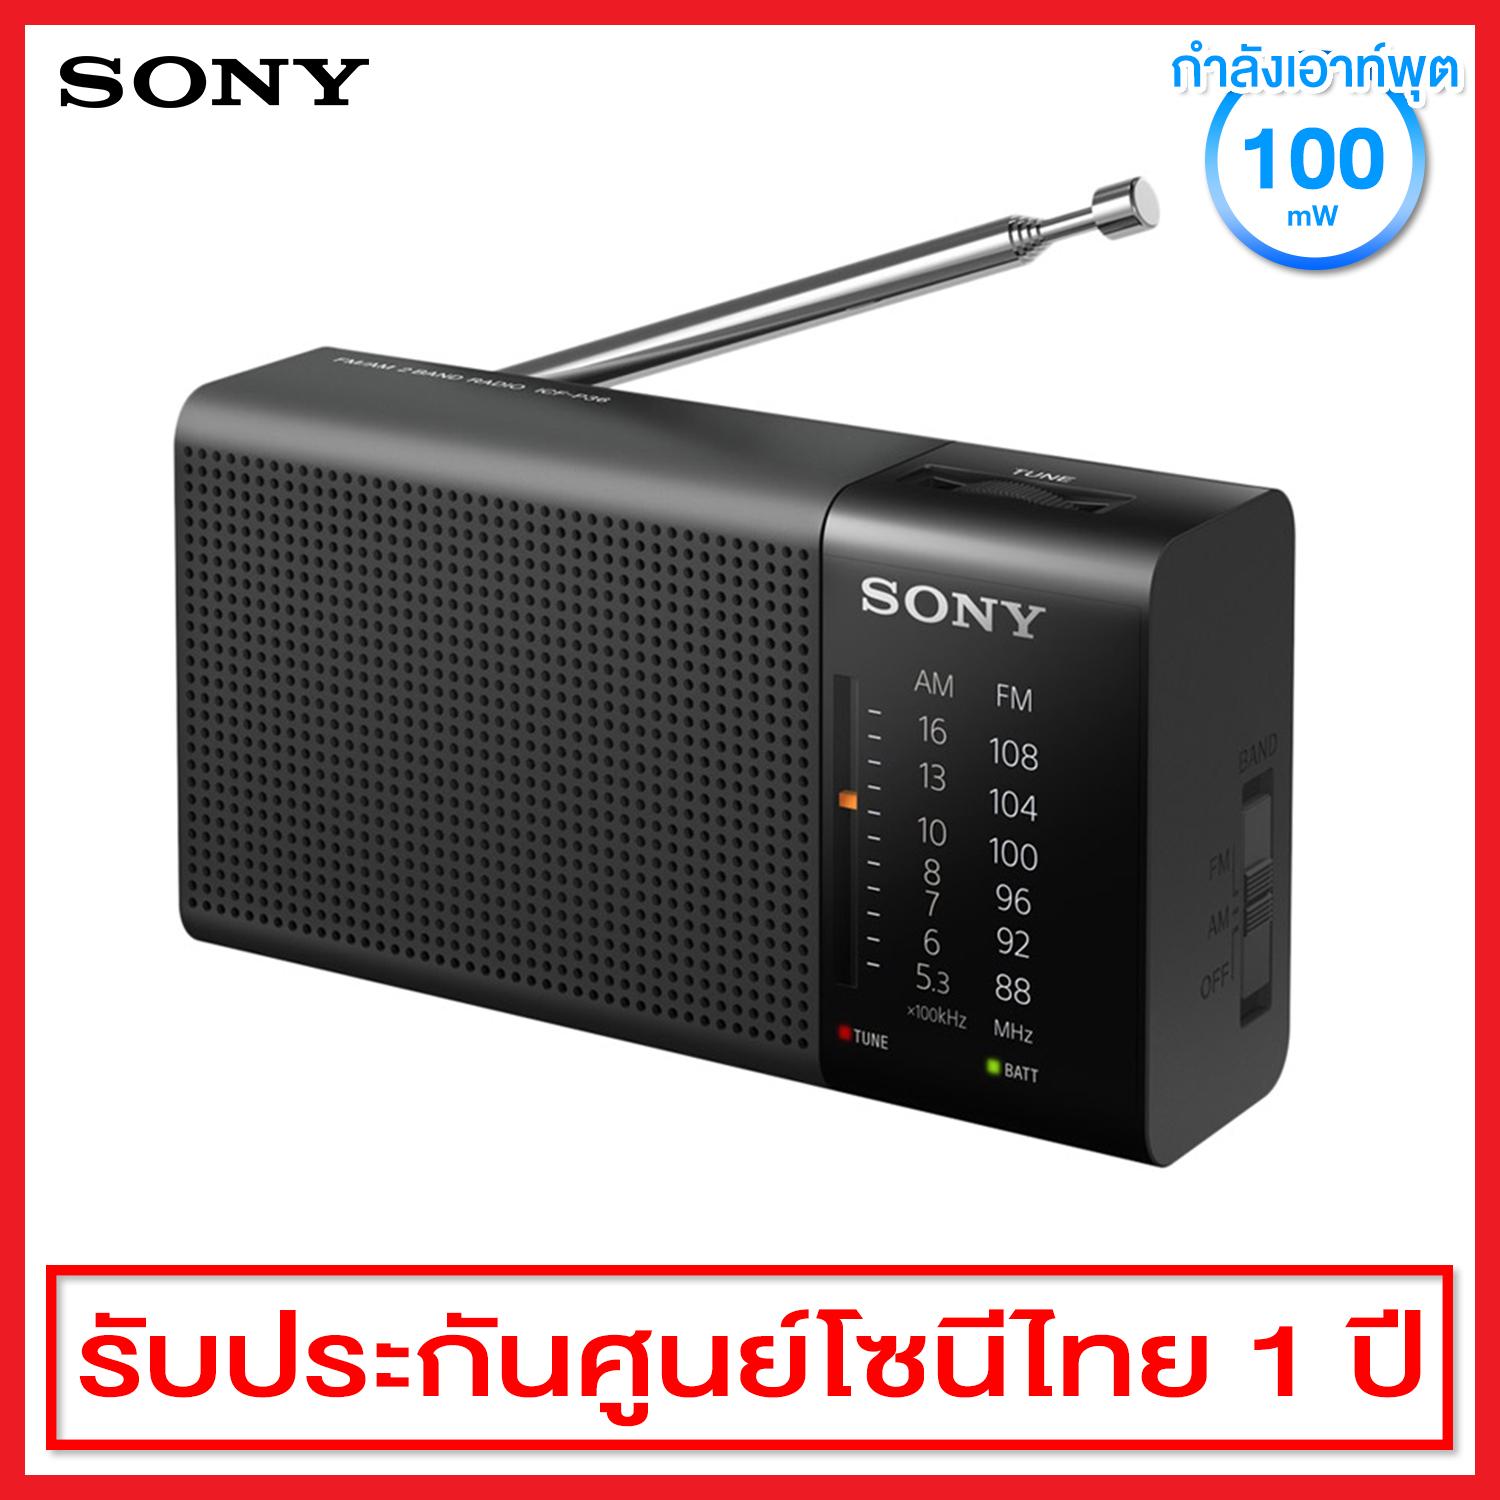 Sony วิทยุ AM/FM แบบพกพา รุ่น ICF-P36